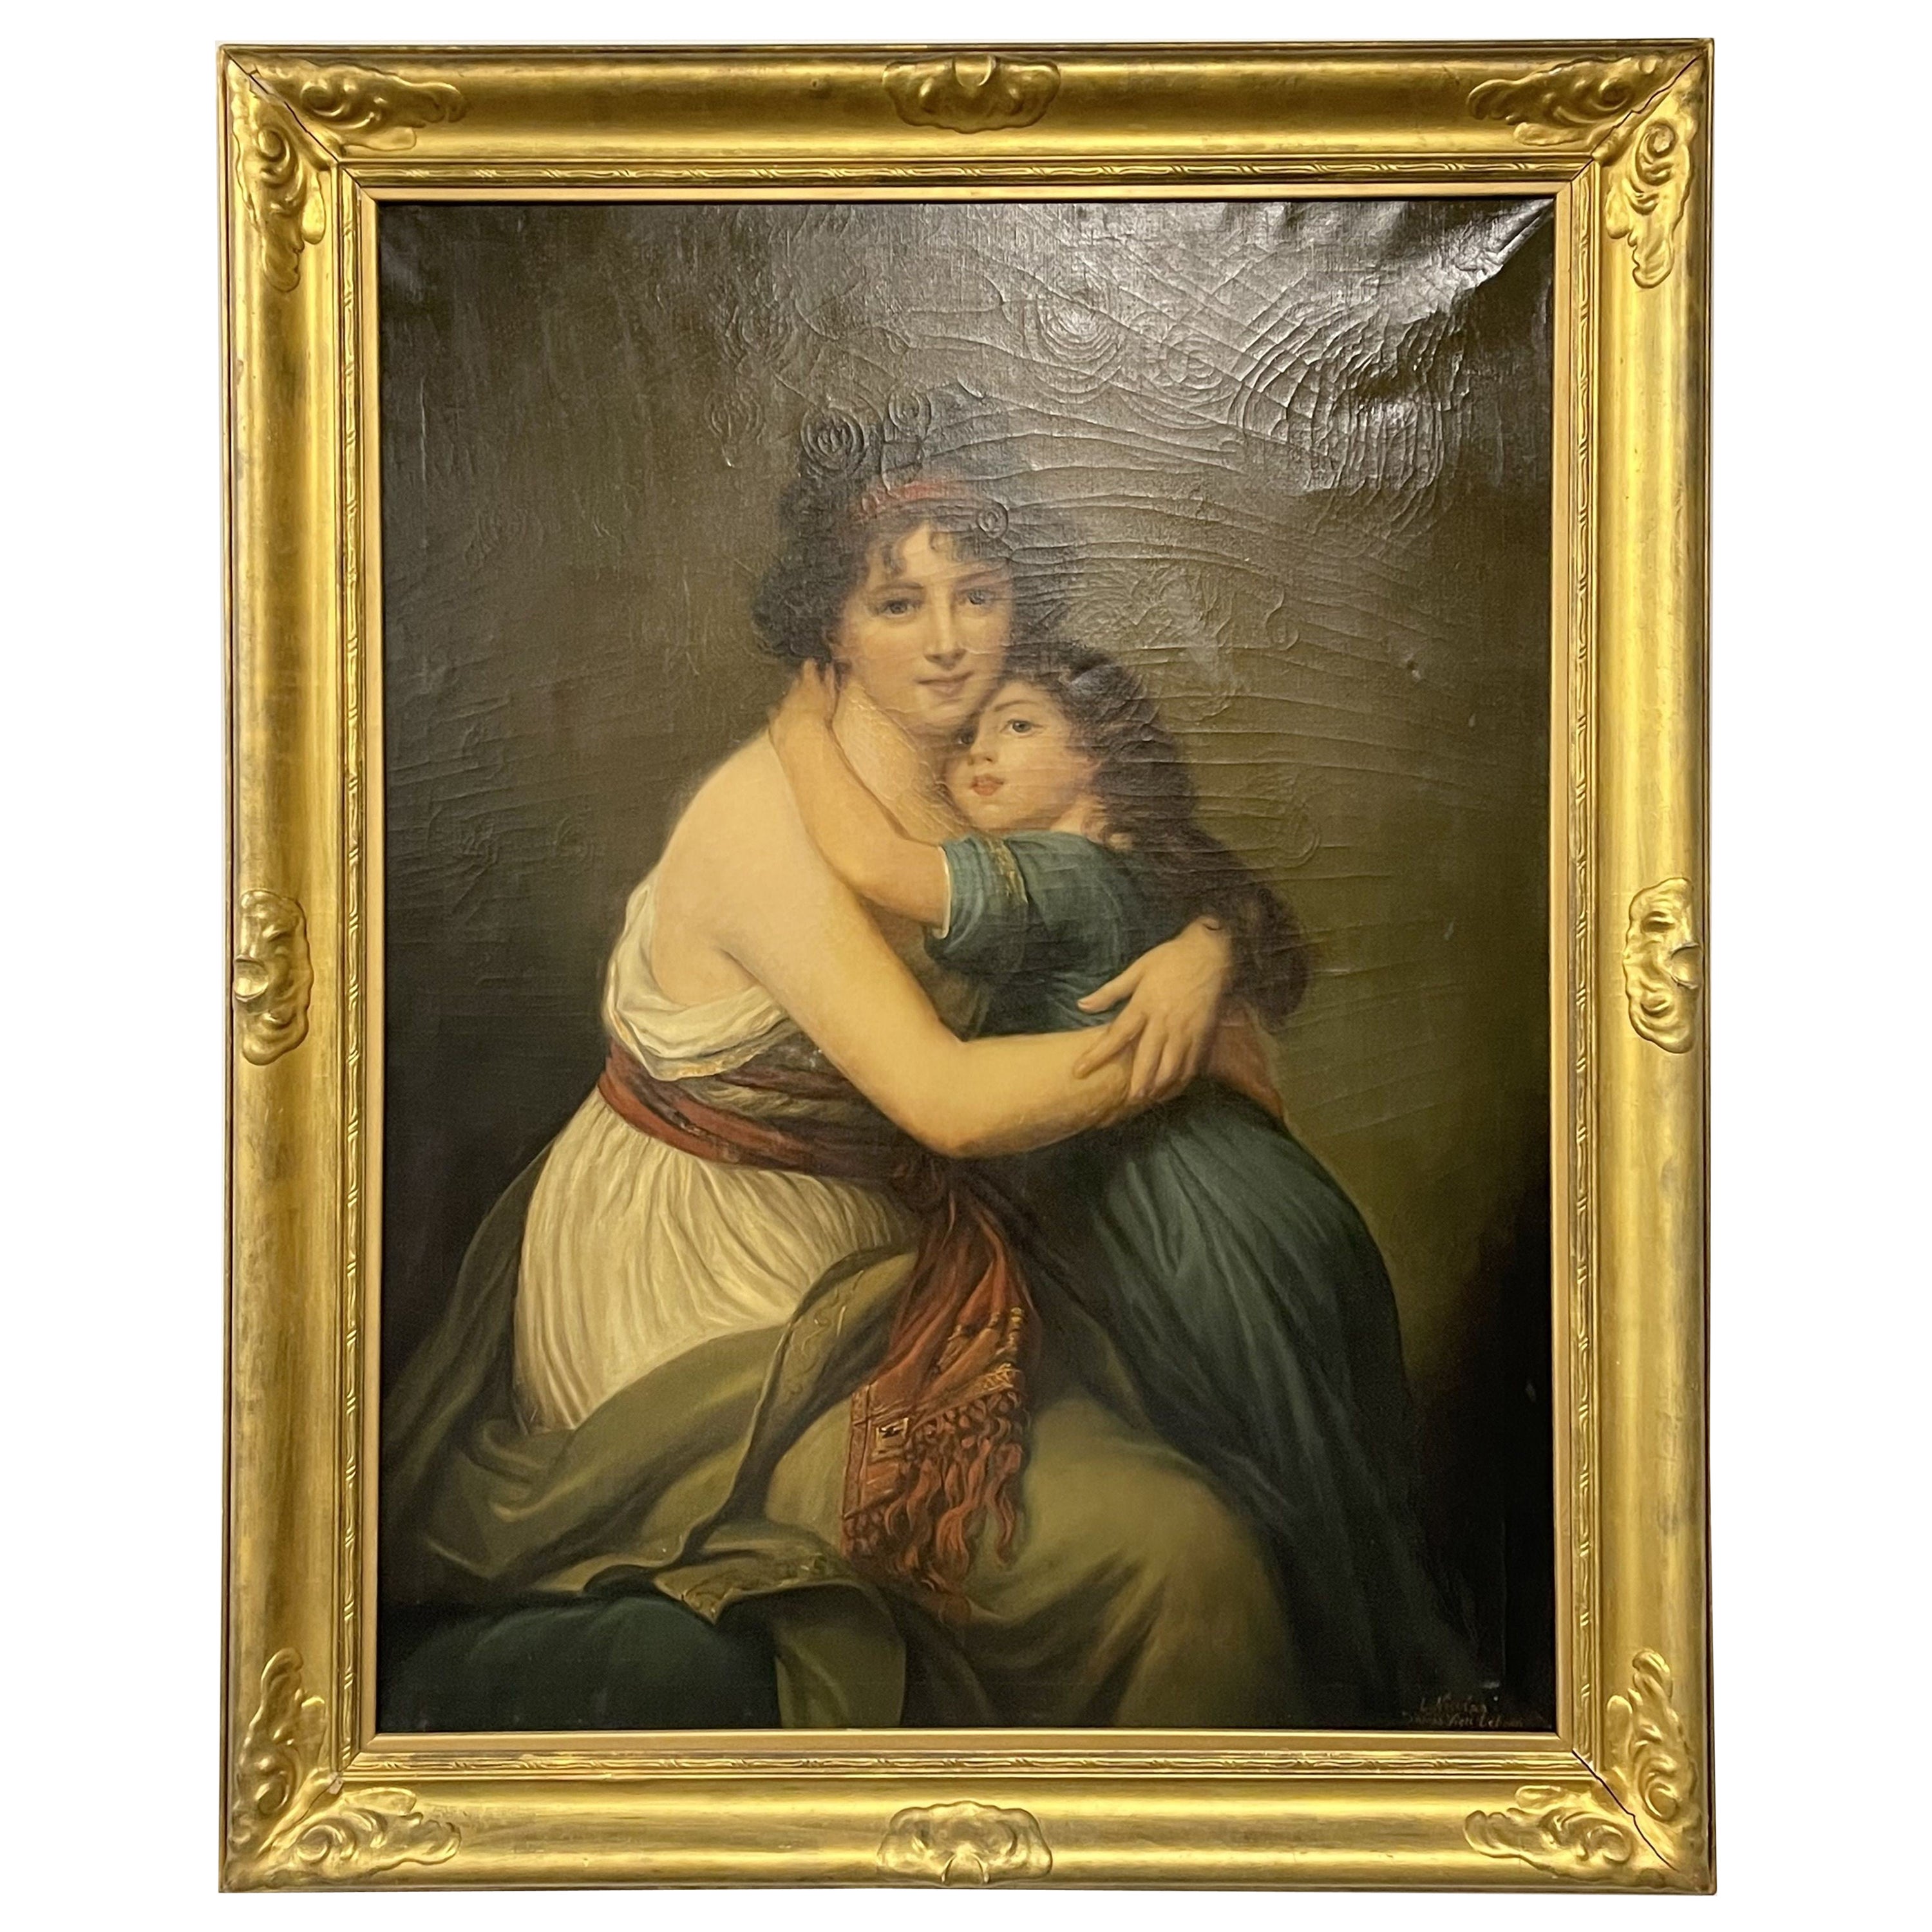 Grande huile sur toile « Mother and Child » (Mère et enfant) signée L. Nicolas